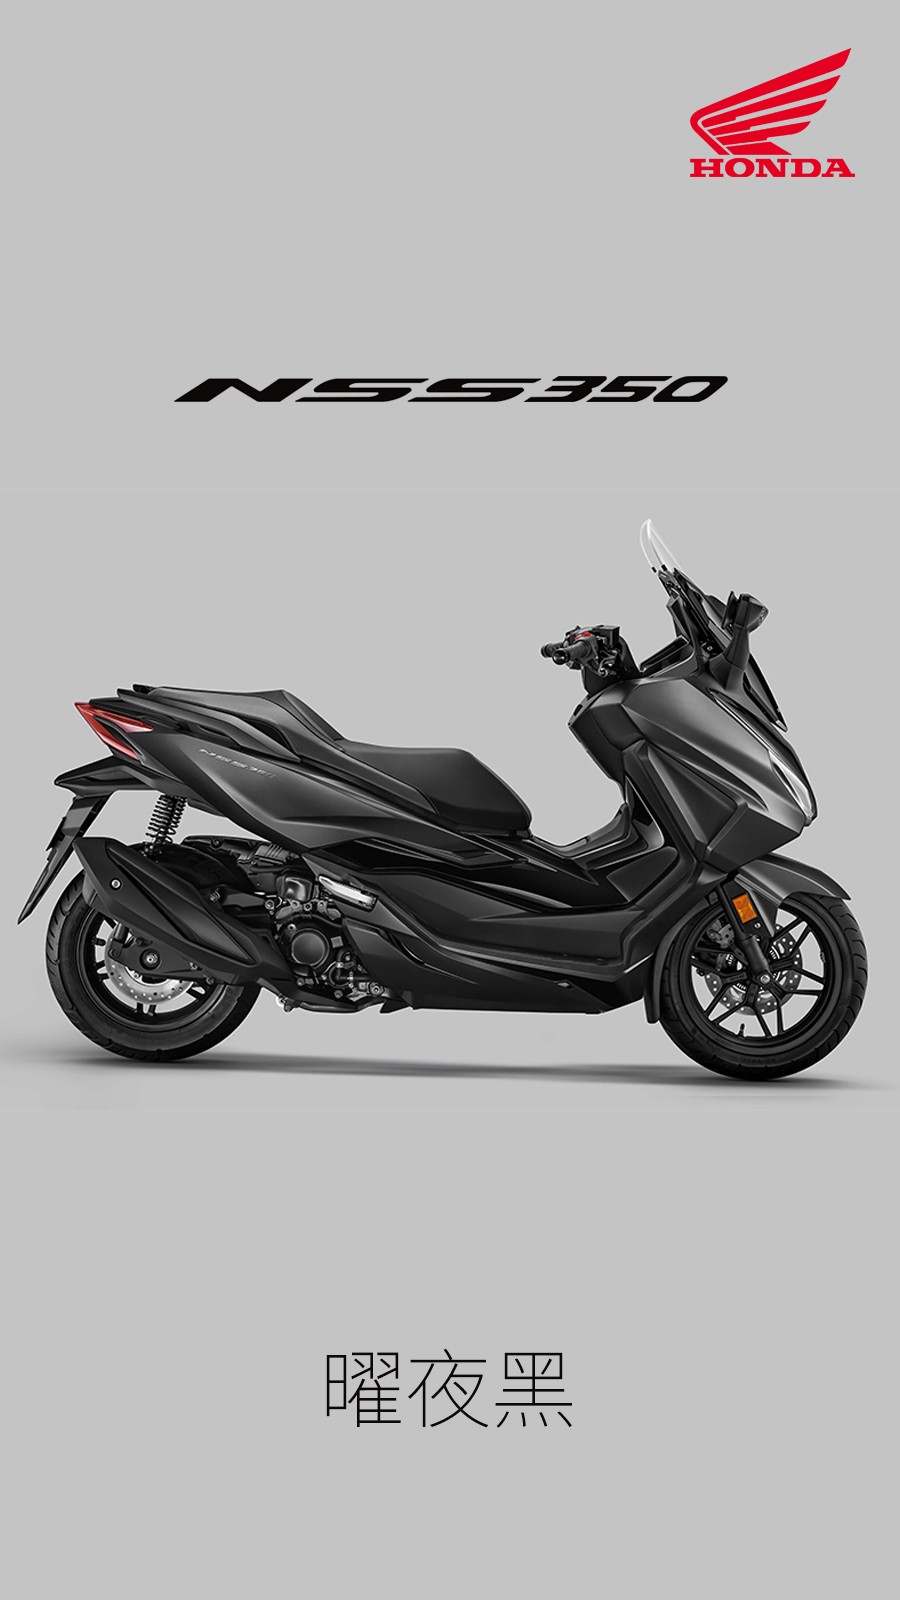 本田佛沙350 Honda NSS350 新大洲本田摩托车 踏板车深圳预定现车